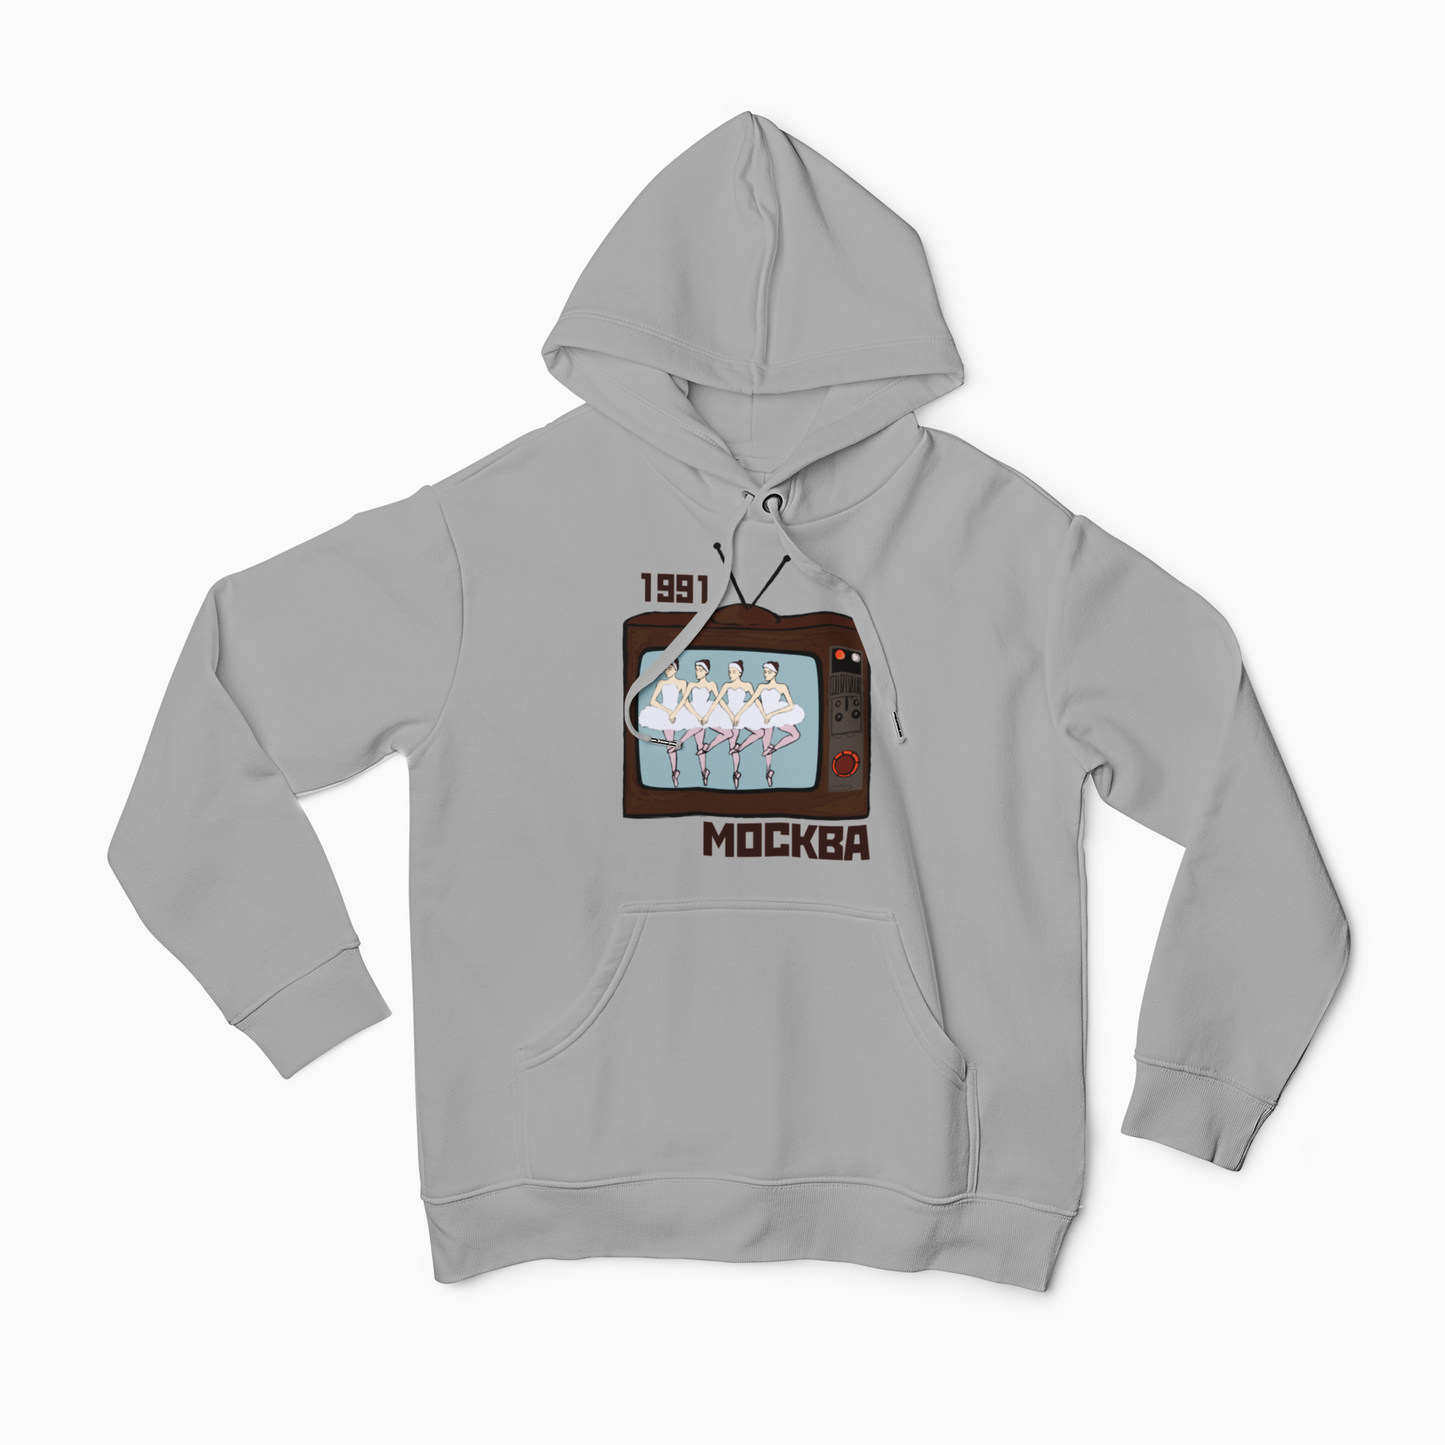 MOSCOW'91 Unisex Hooded Sweatshirt